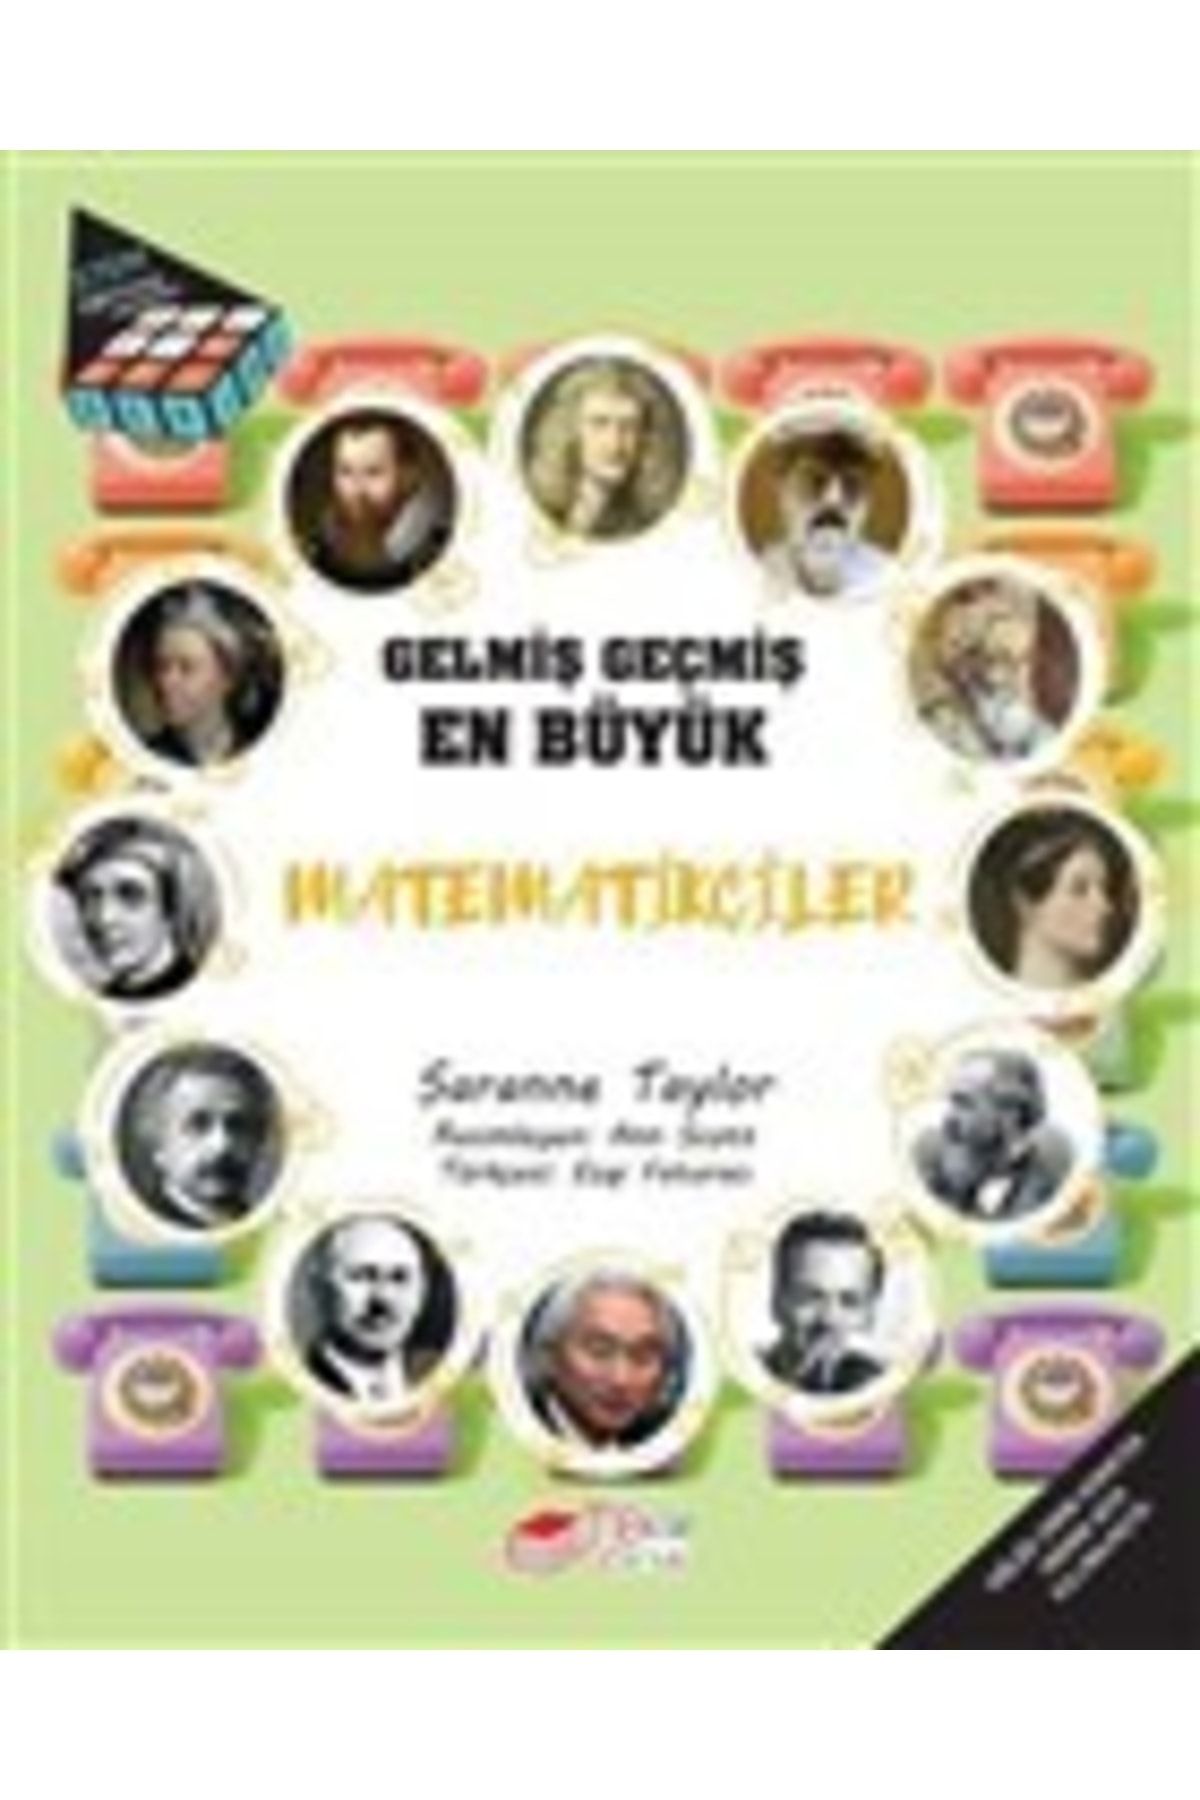 The Çocuk Gelmiş Geçmiş En Büyük Matematikçiler Saranne Taylor